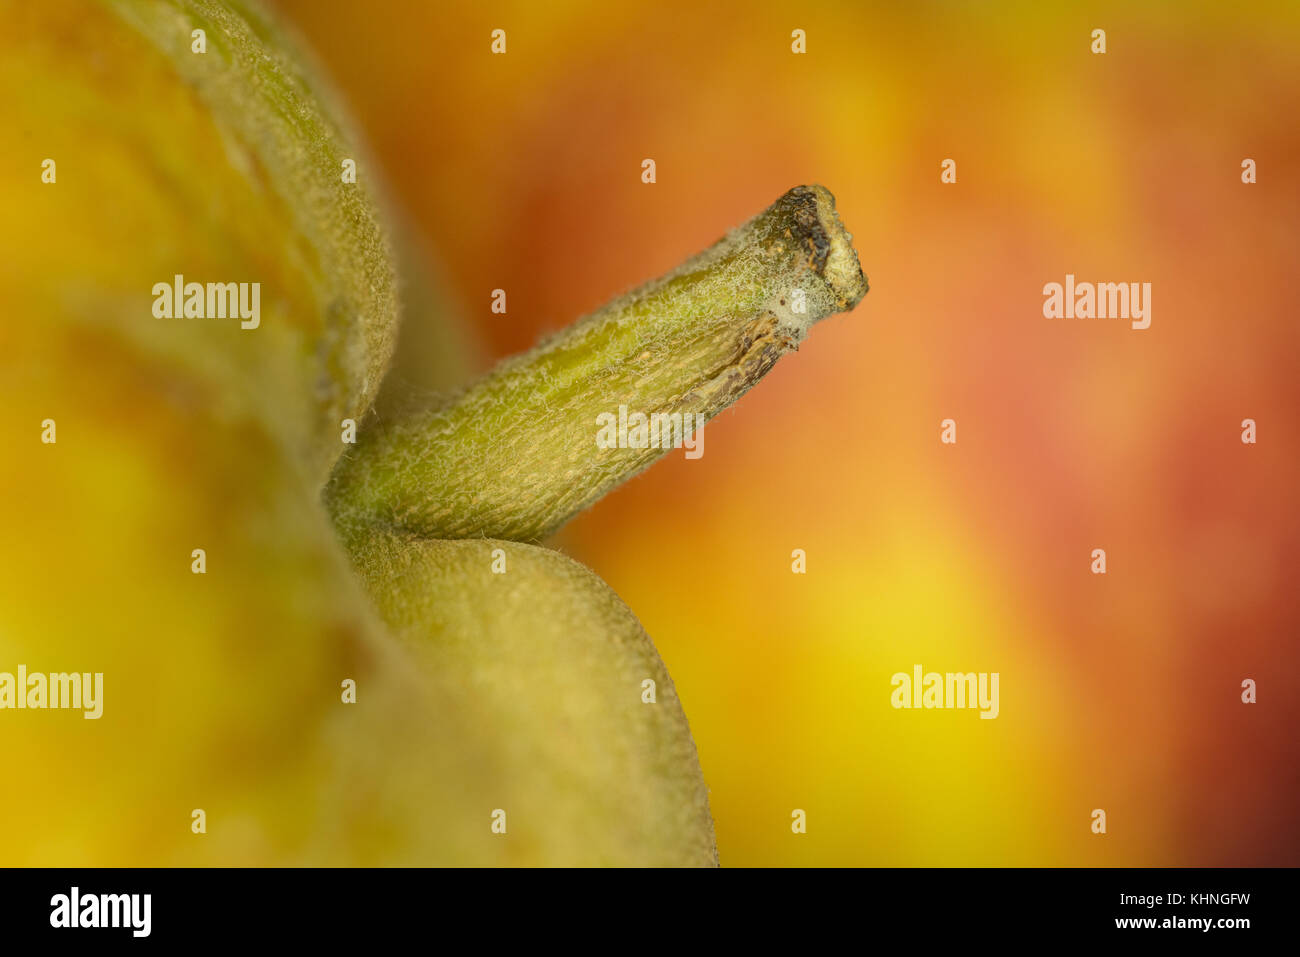 Posa suggestiva immagini e fotografie stock ad alta risoluzione - Alamy